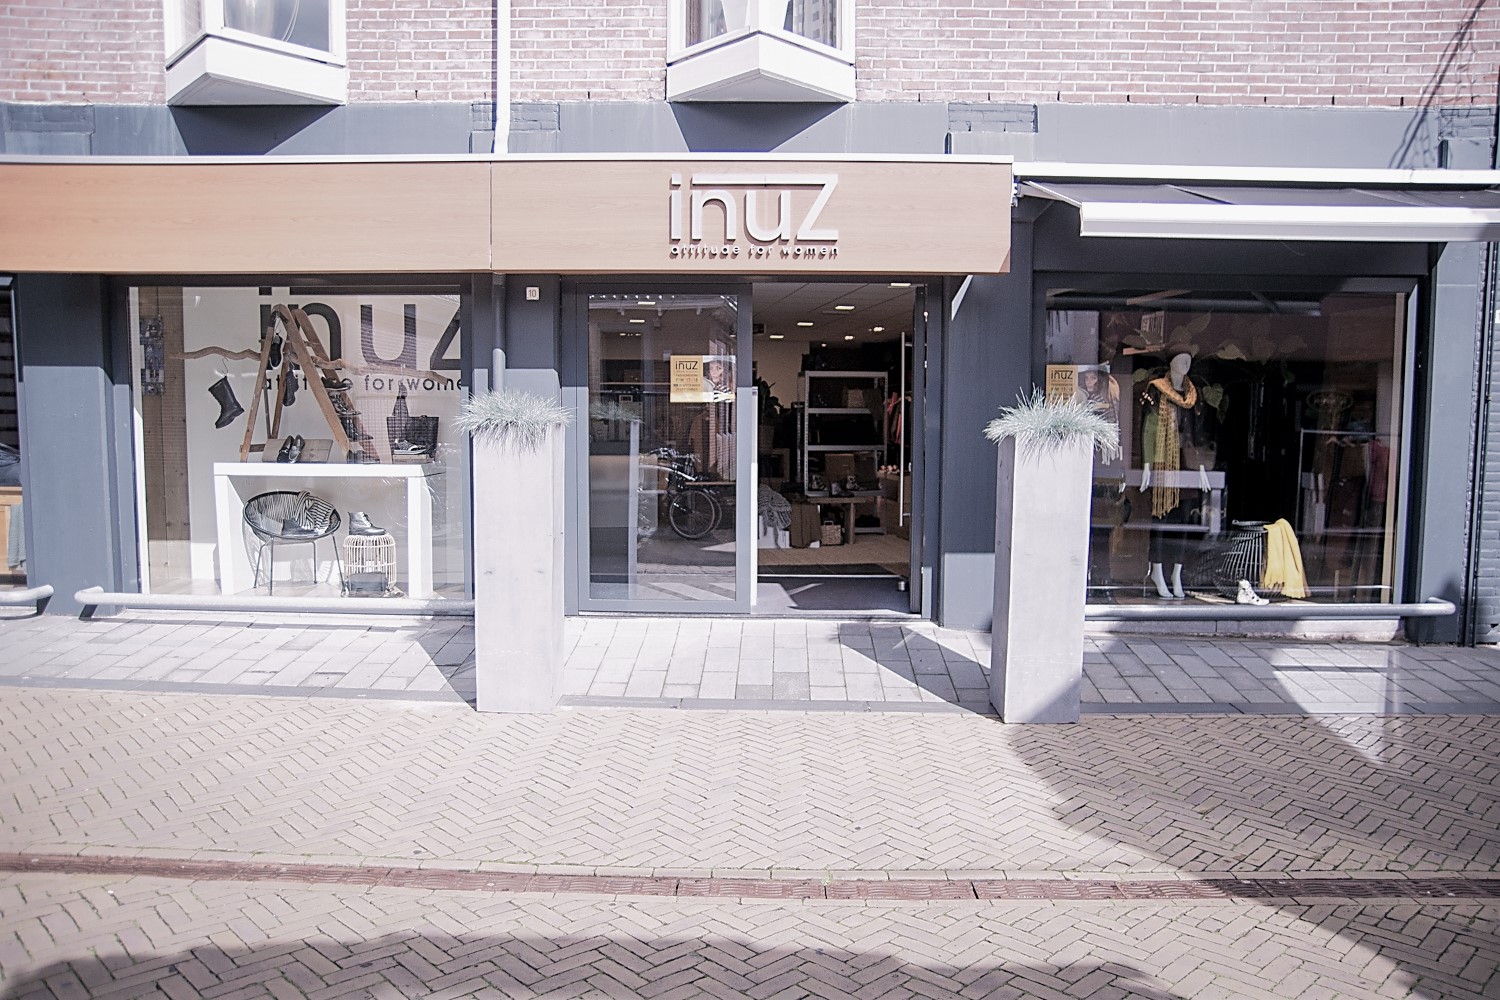 heuvel overschreden Aangenaam kennis te maken Inuz attitude for women damesmode in Franeker Joure en Surhuisterveen